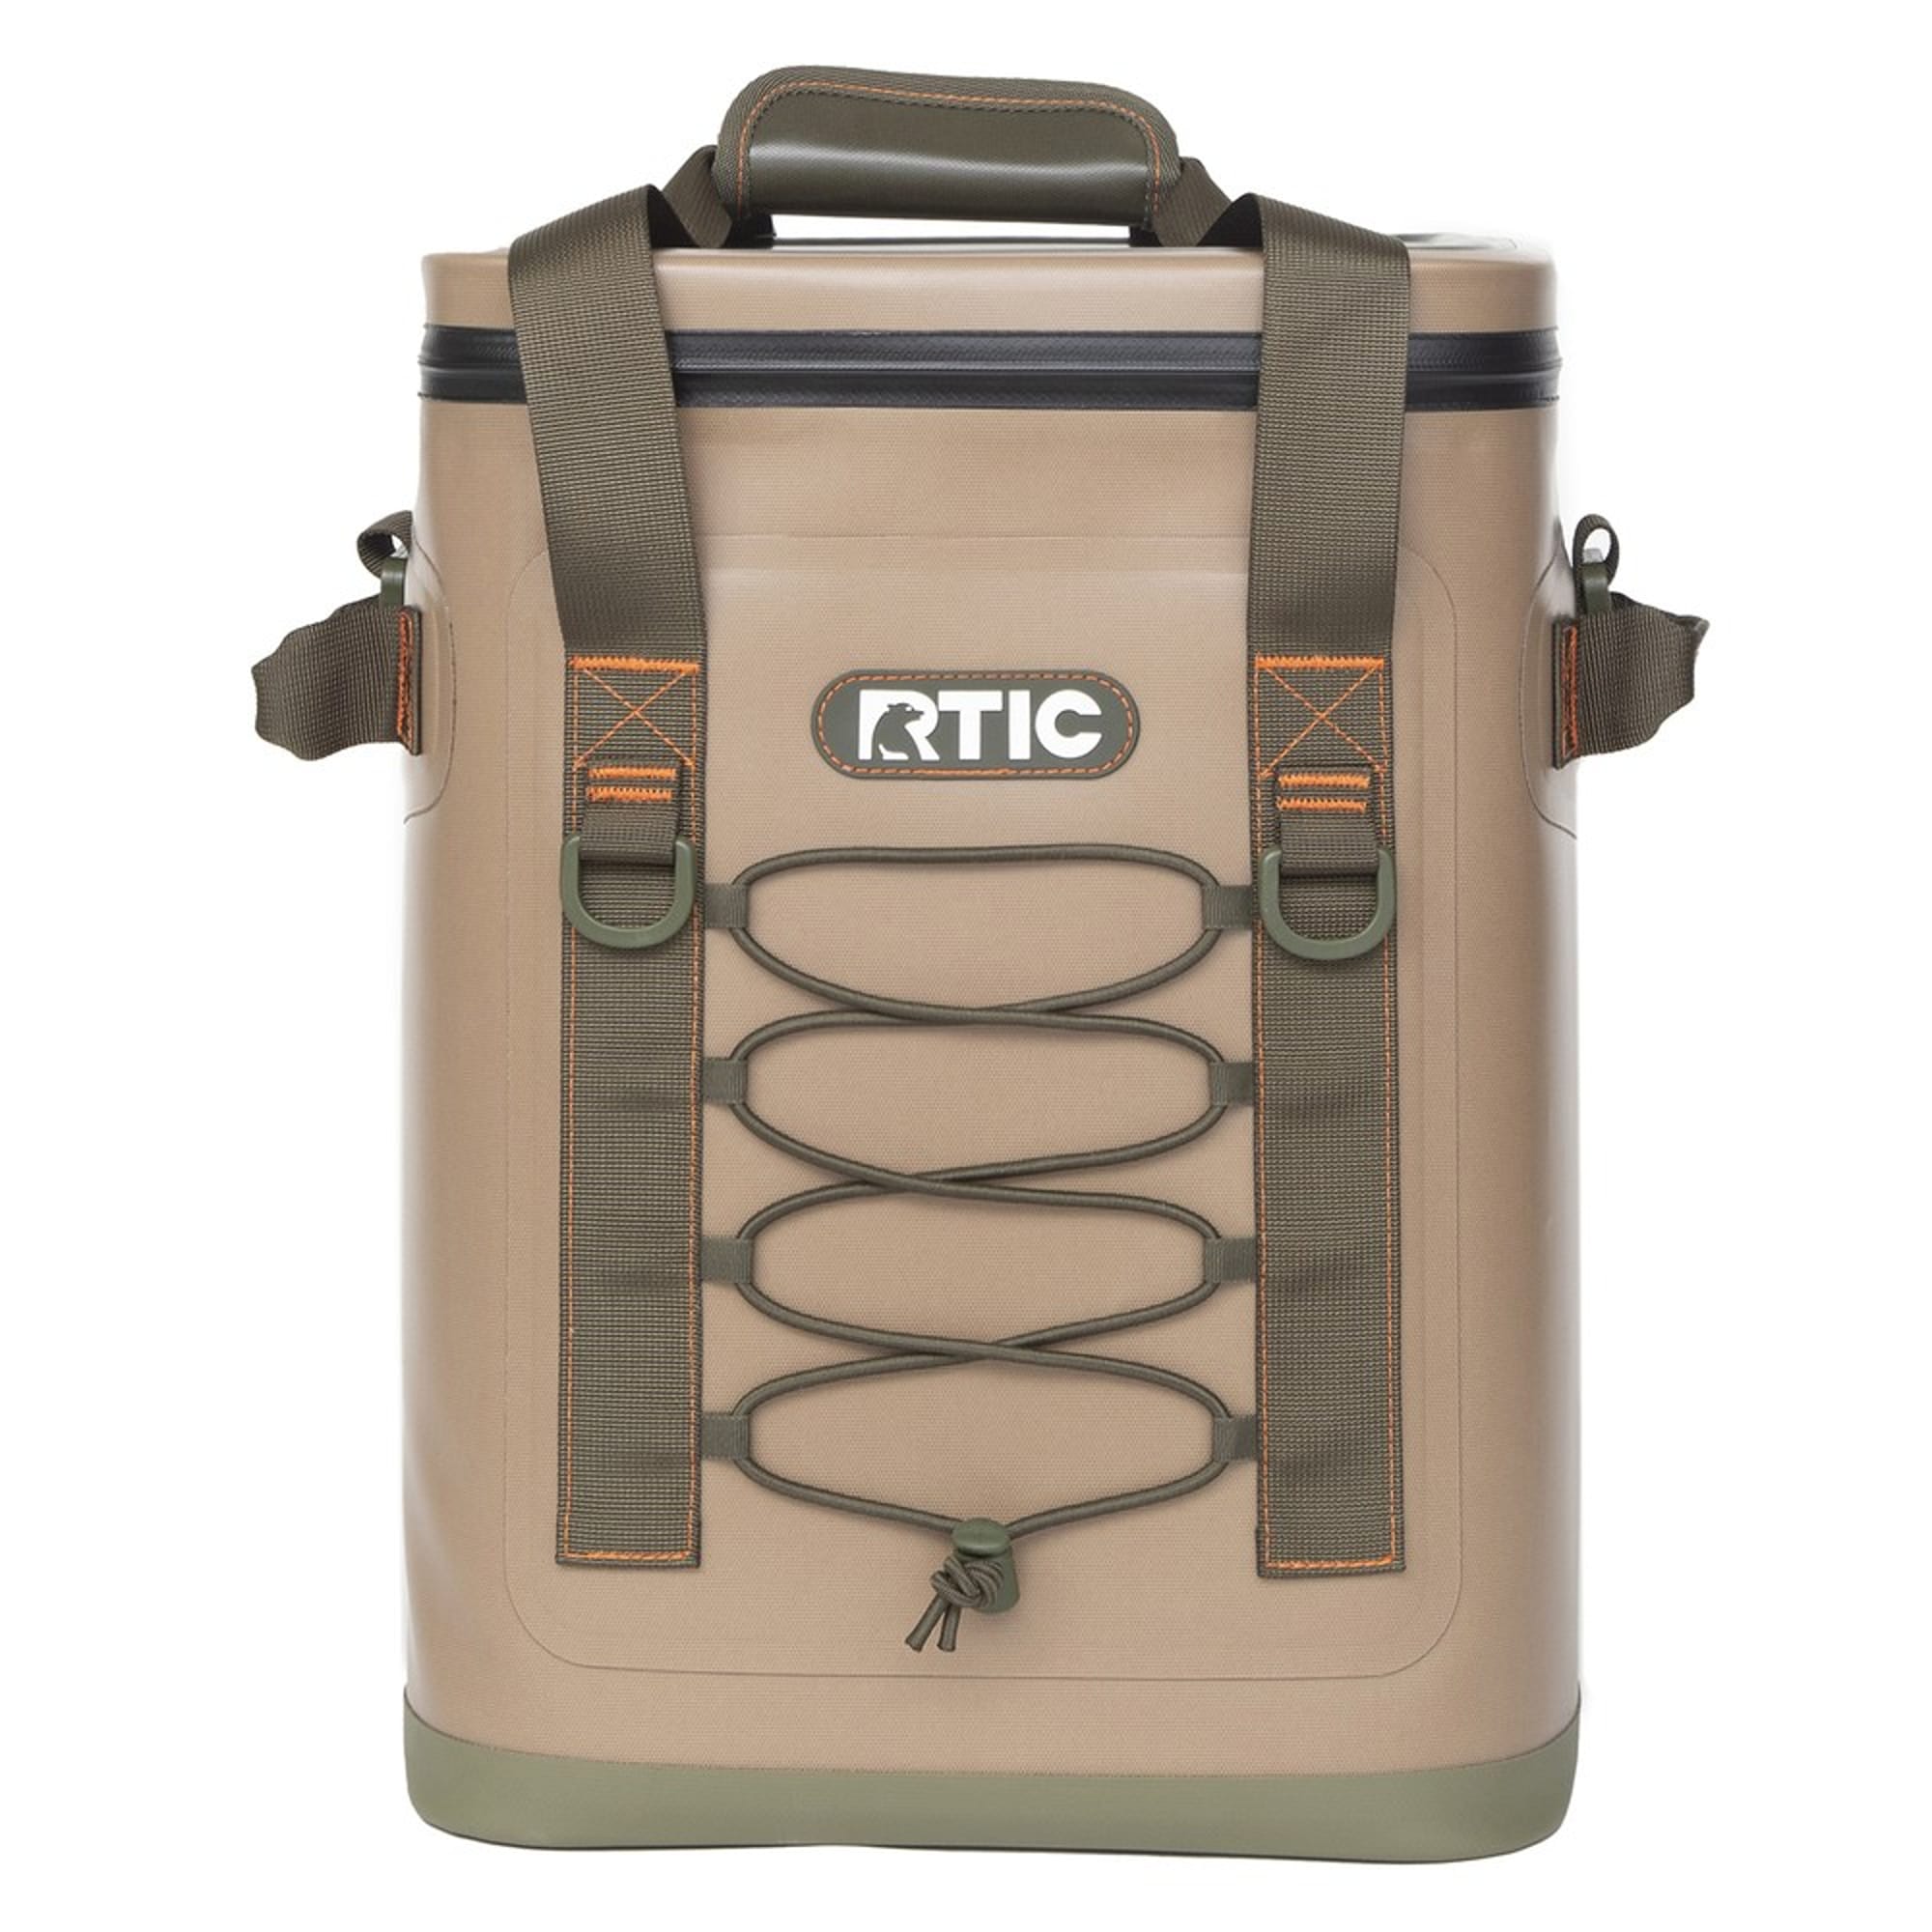 Zyn Rtic Backpack/Duffel Cooler | eBay